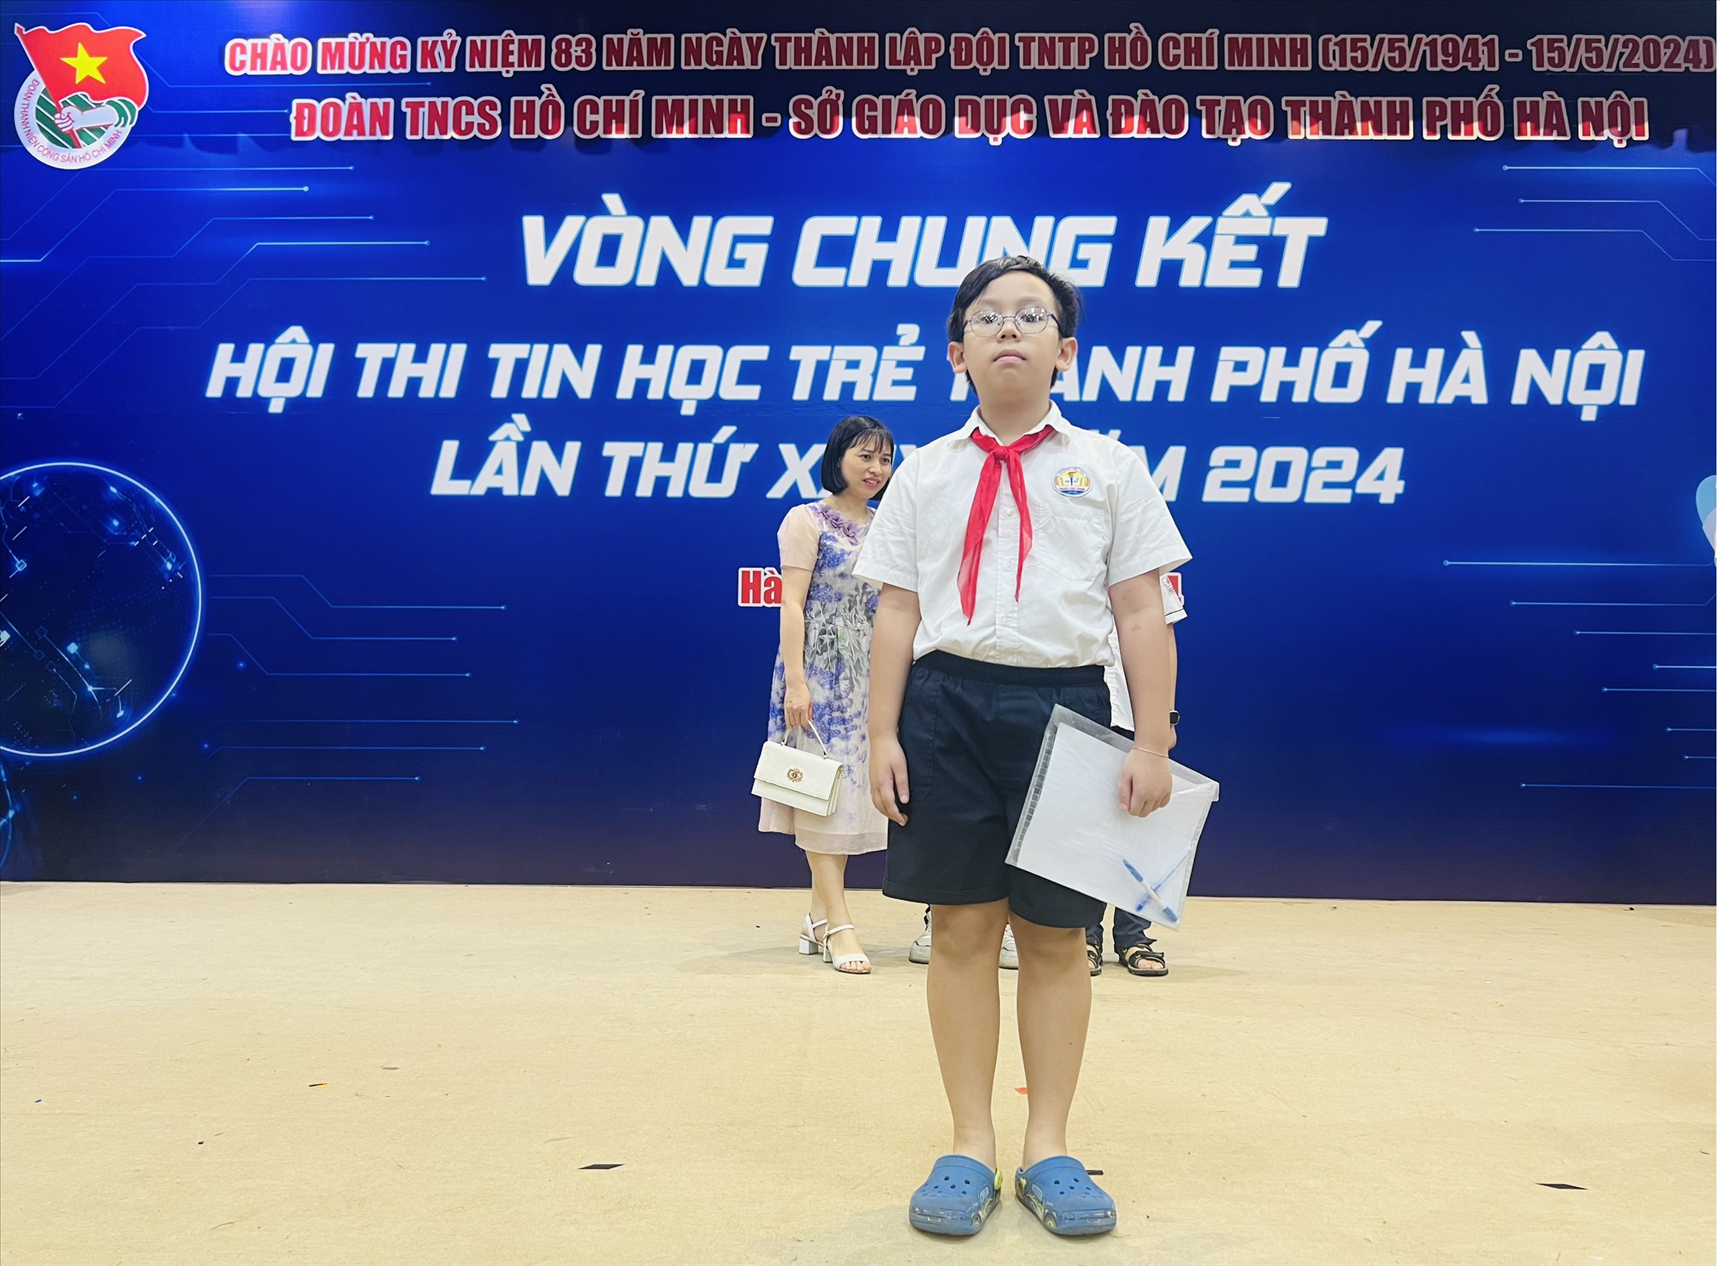 Học sinh trường Tiểu học Phan Chu Trinh tham gia Hội thi Tin học trẻ cấp Thành phố - Vòng thi chung kết